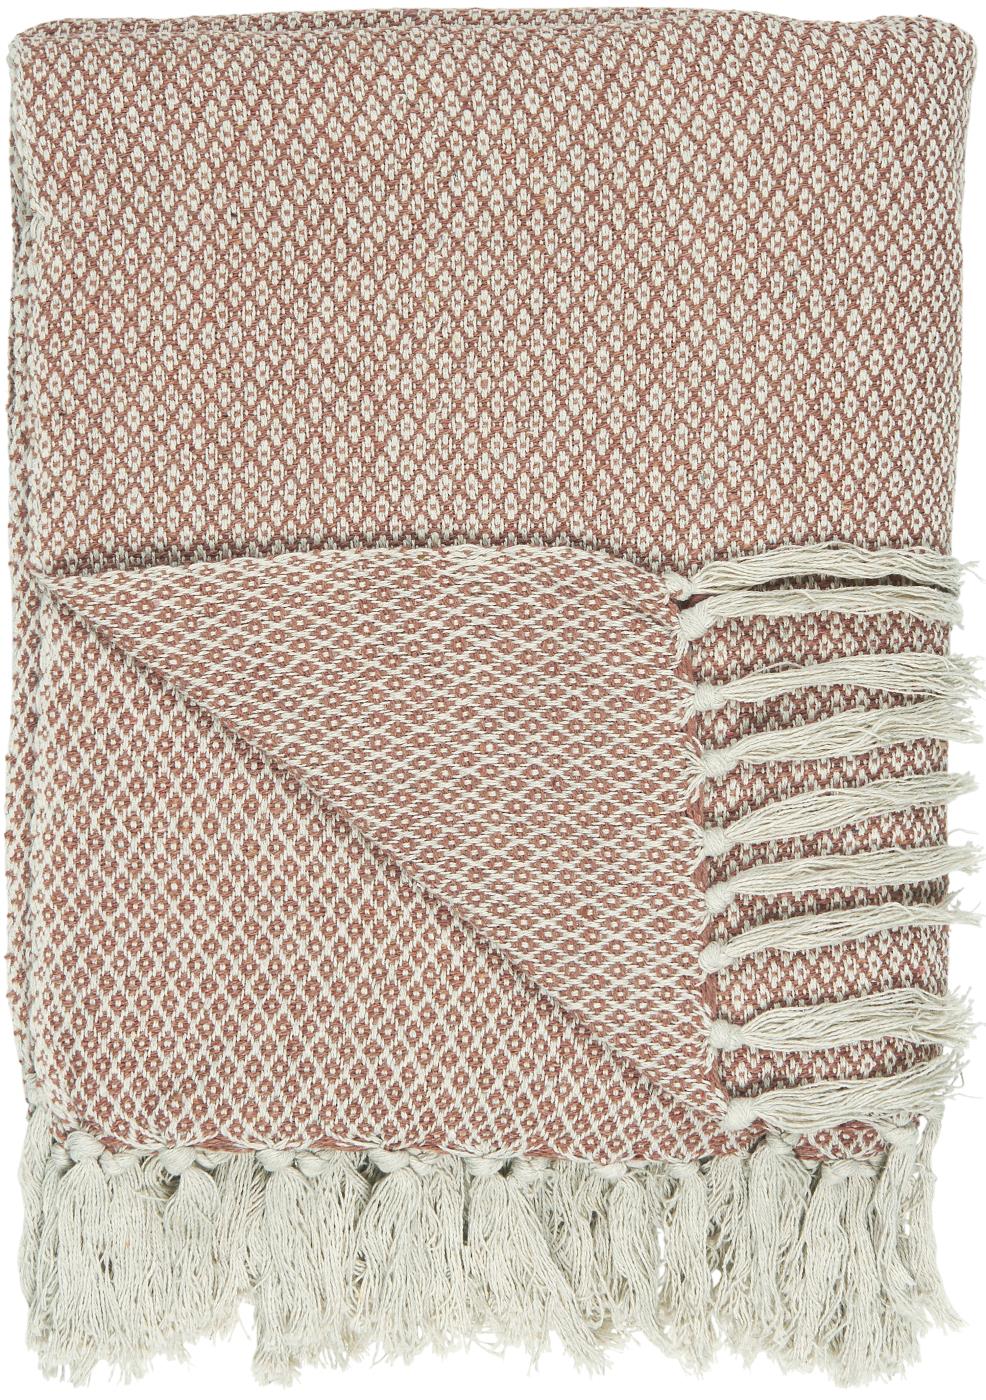 Decke, Karomuster, dunkel rosa, 130 x 160cm - mueggelig